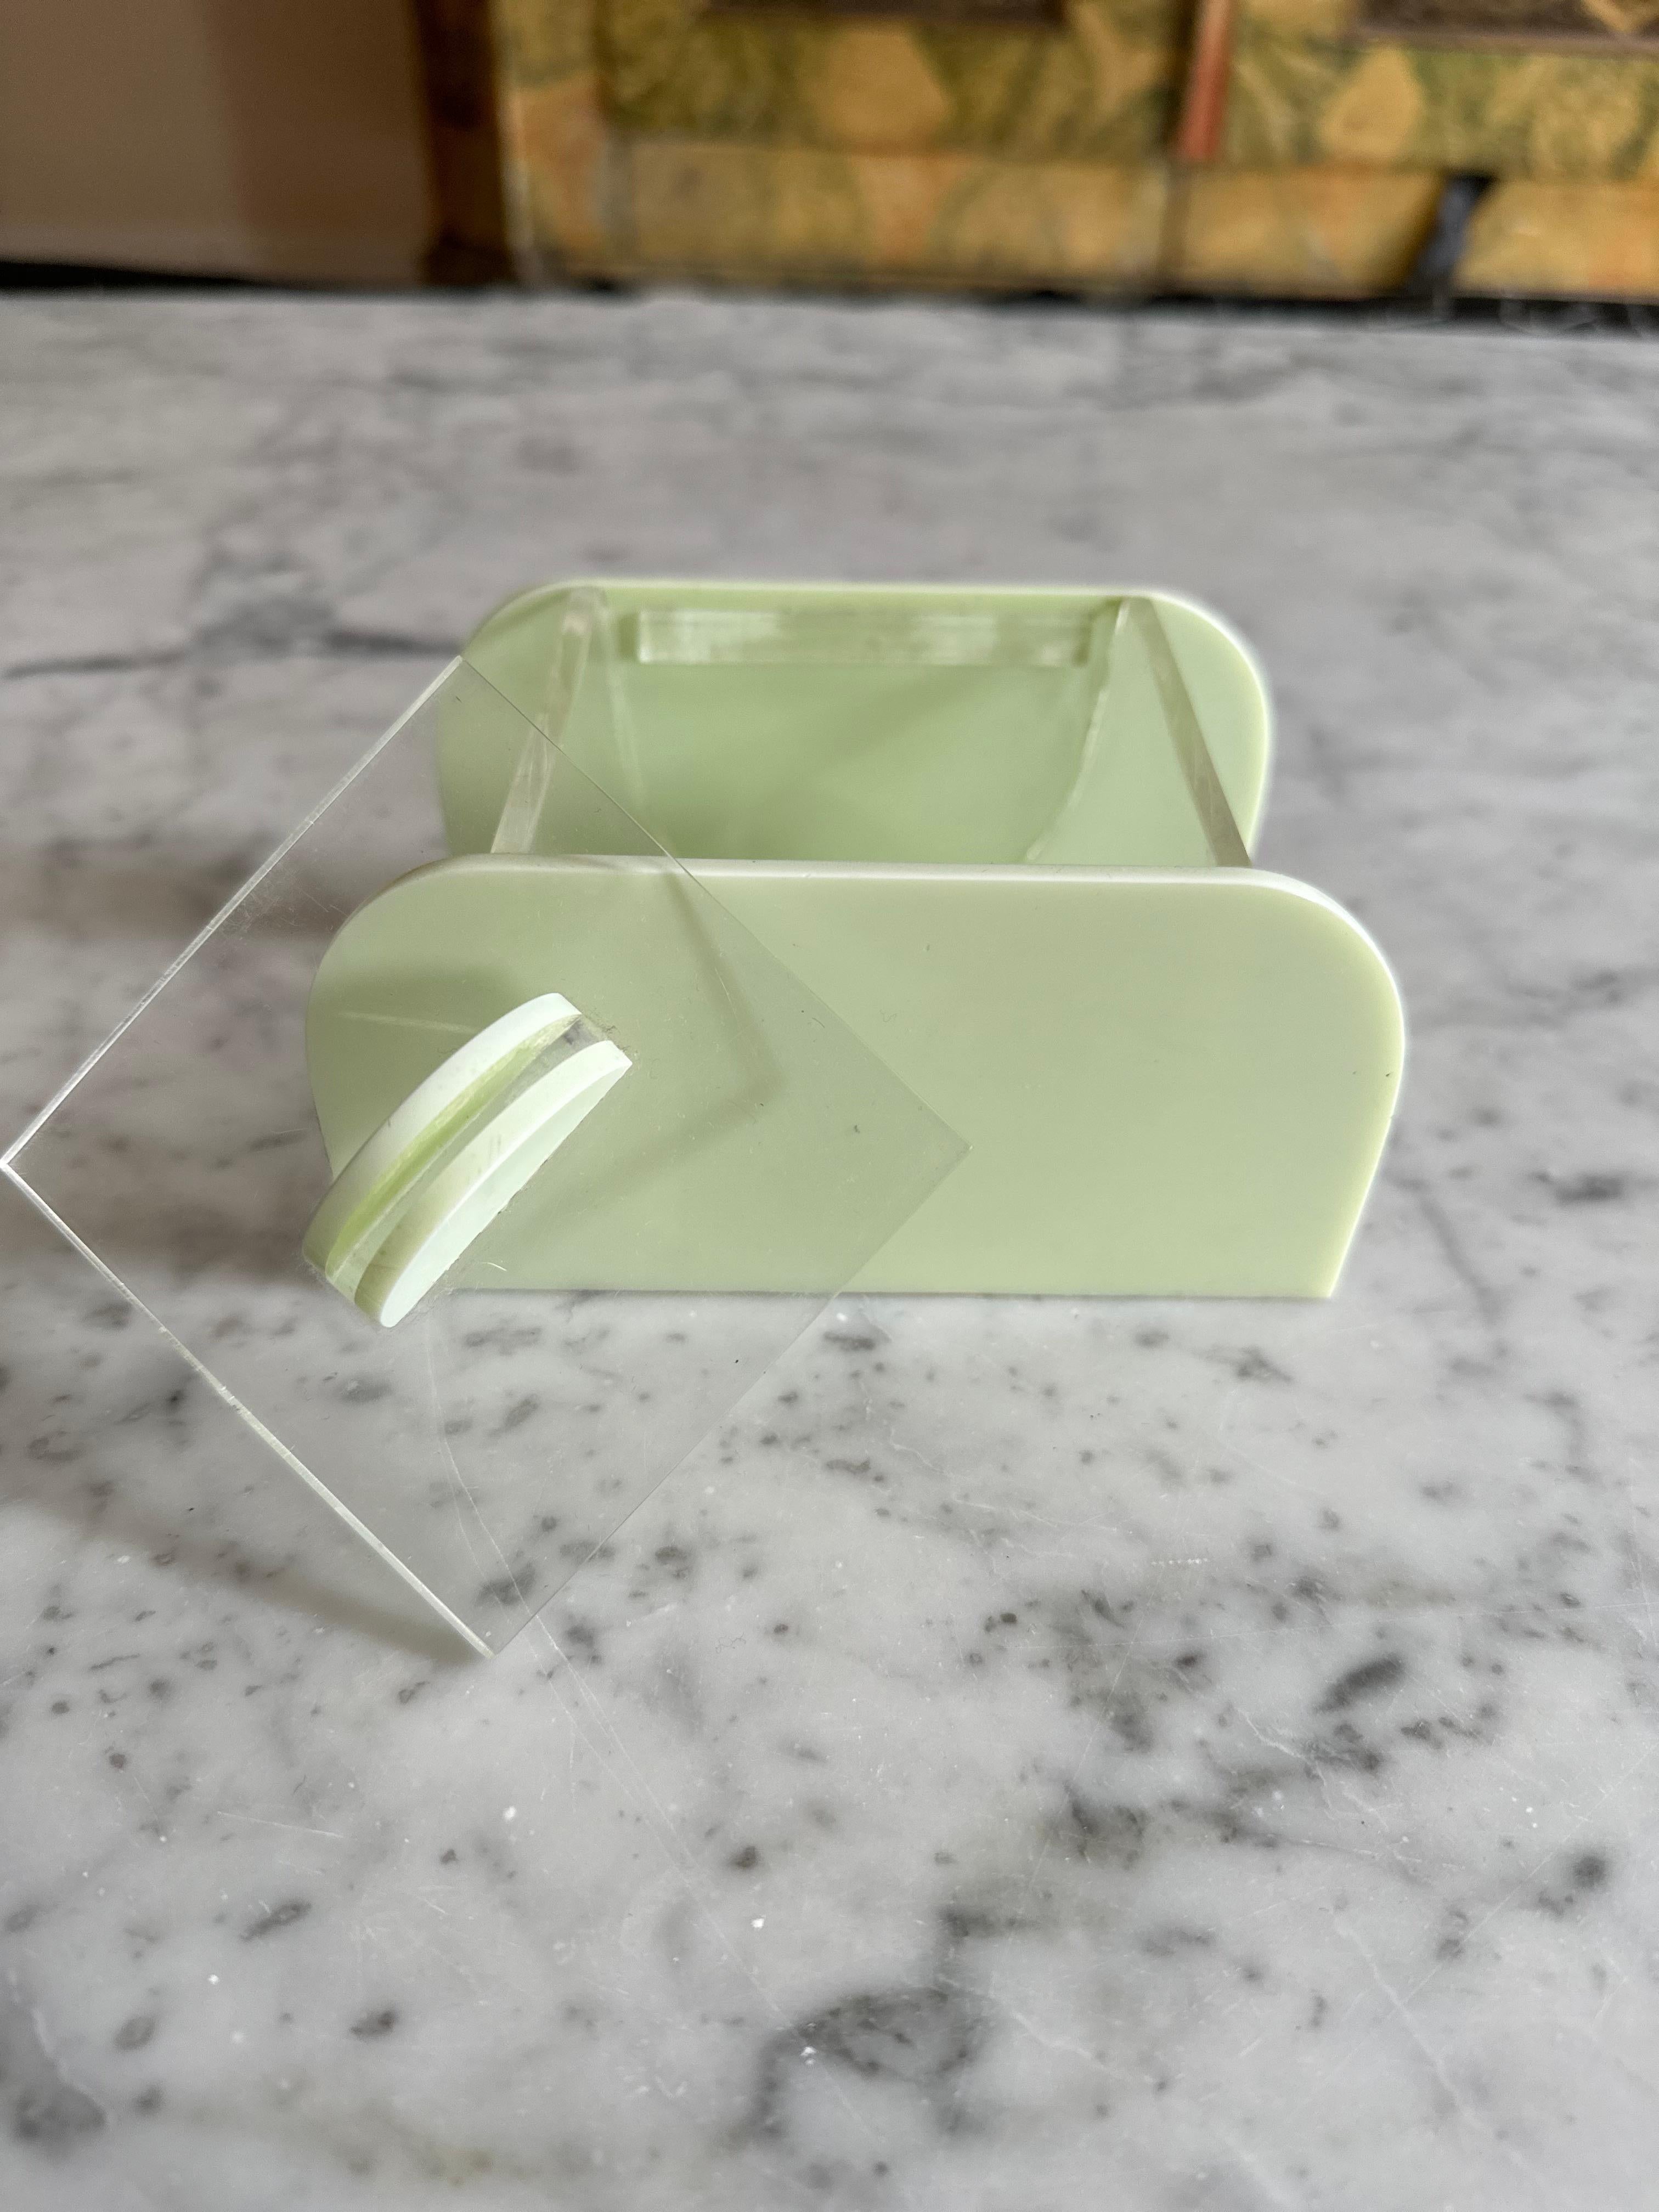 Nous vous présentons notre boîte à cosmétiques Art déco, une pièce de rangement étonnante qui allie sans effort l'élégance pastel au charme architectural du Miami des années 1920. Fabriquée en plastique transparent et vert menthe de haute qualité,